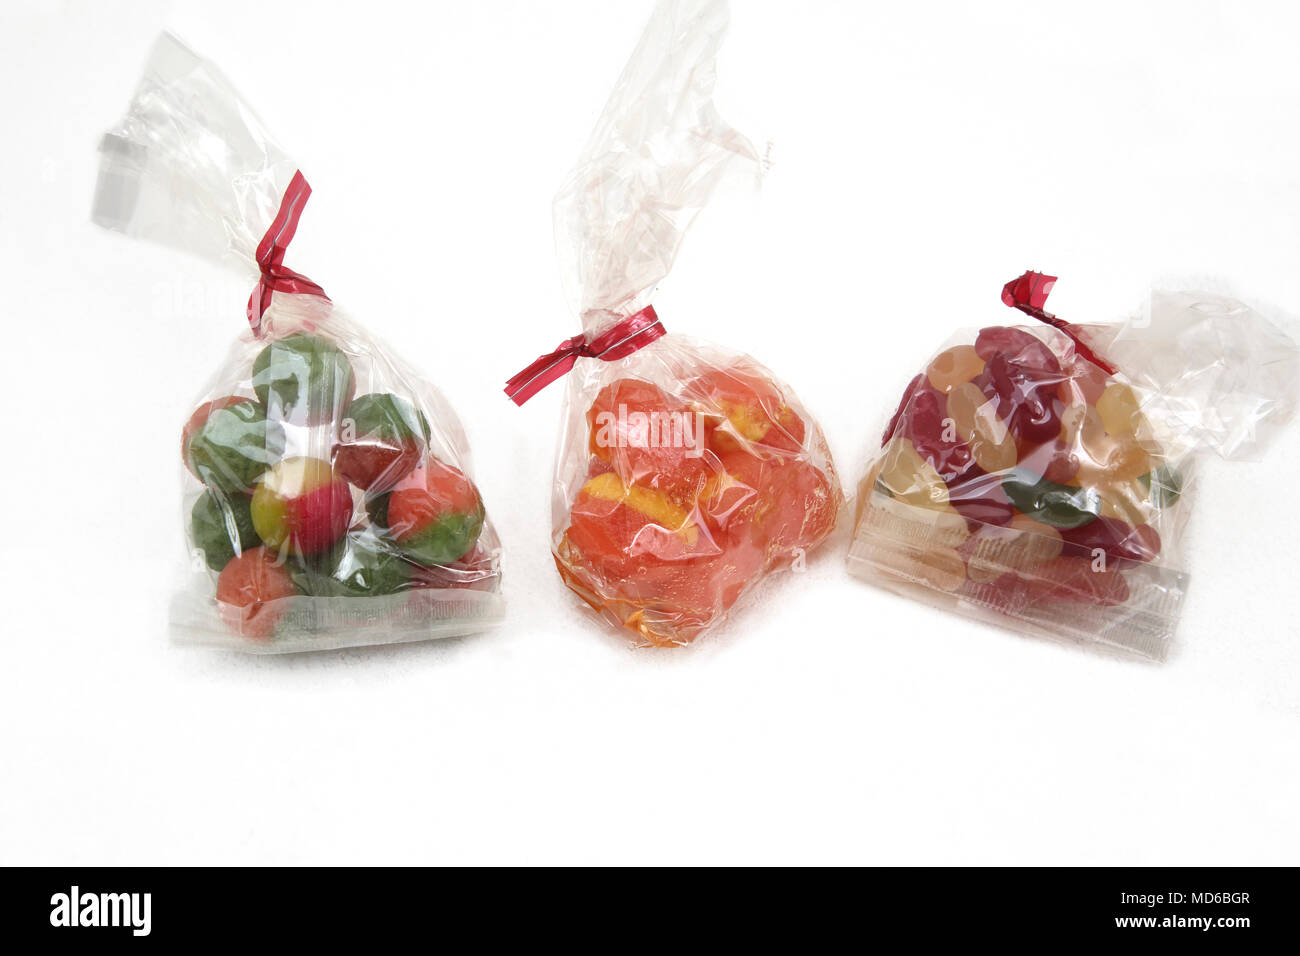 Altmodische Süßigkeiten Apple Kugeln, Rhabarber und Vanillepudding und Jelly Beans Stockfoto